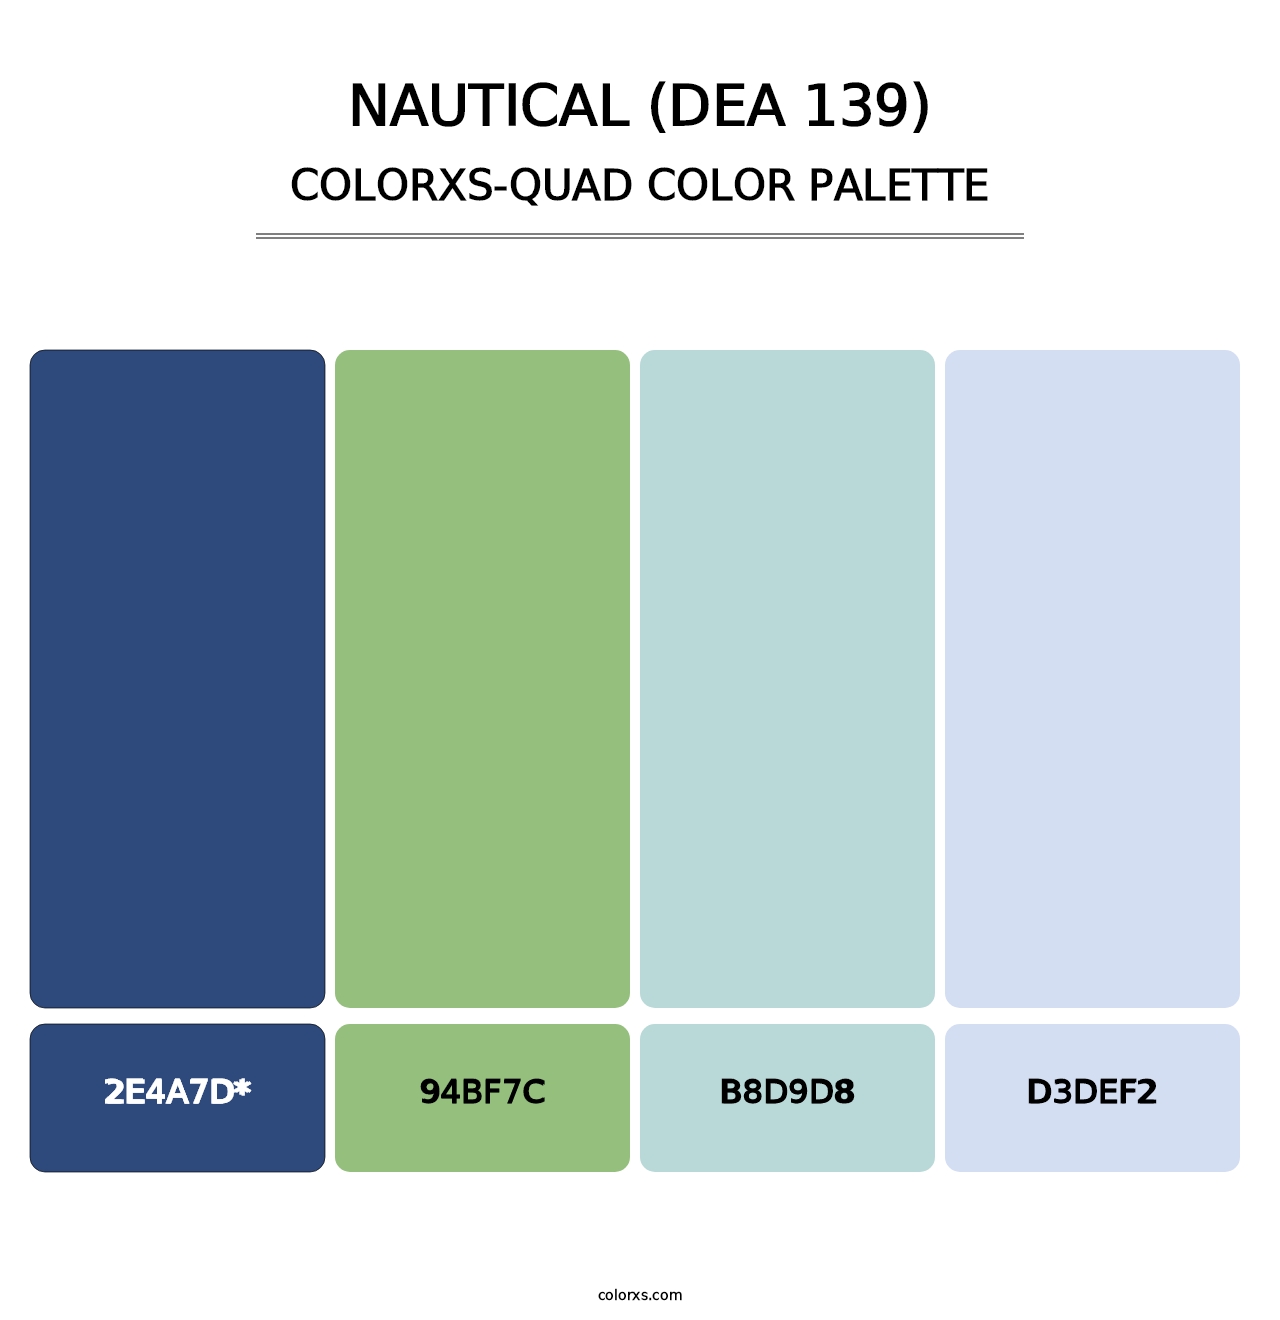 Nautical (DEA 139) - Colorxs Quad Palette